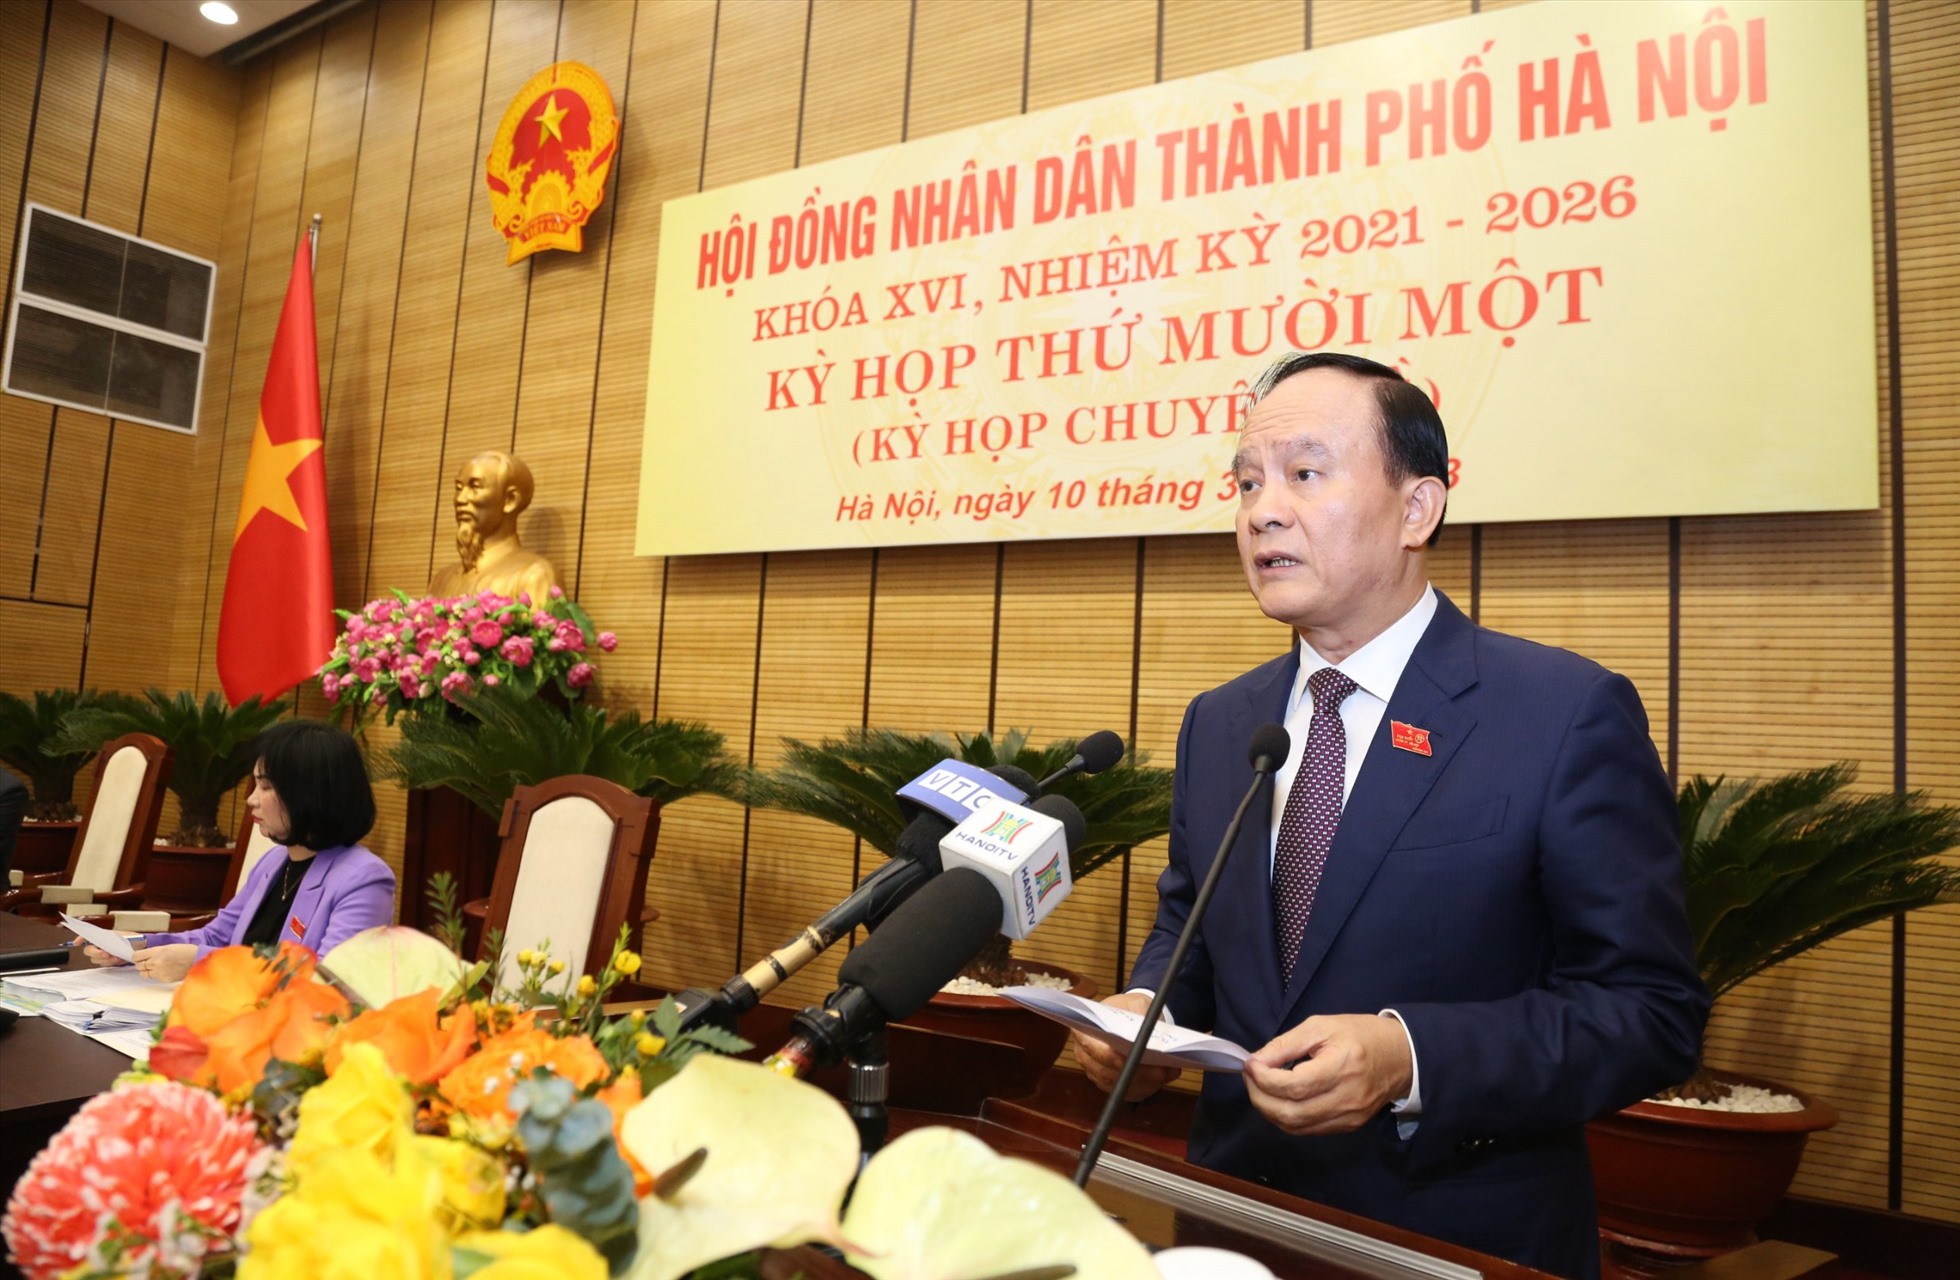 Chủ tịch HĐND TP Hà Nội Nguyễn Ngọc Tuấn phát biểu khai mạc kỳ họp. Ảnh: P.Đông